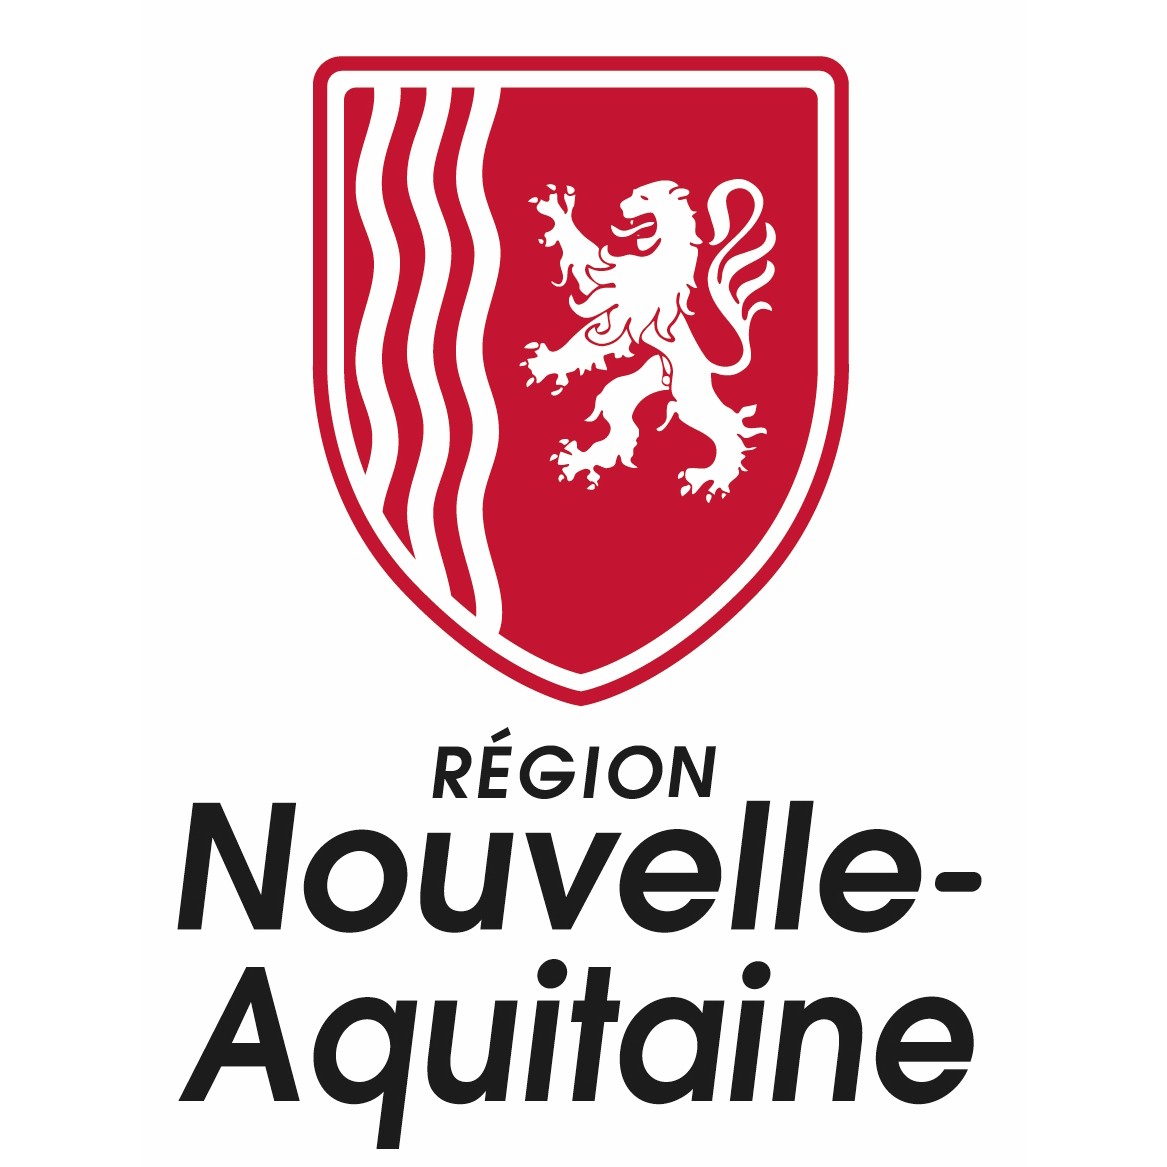 Logo for Nouvelle-Aquitaine region